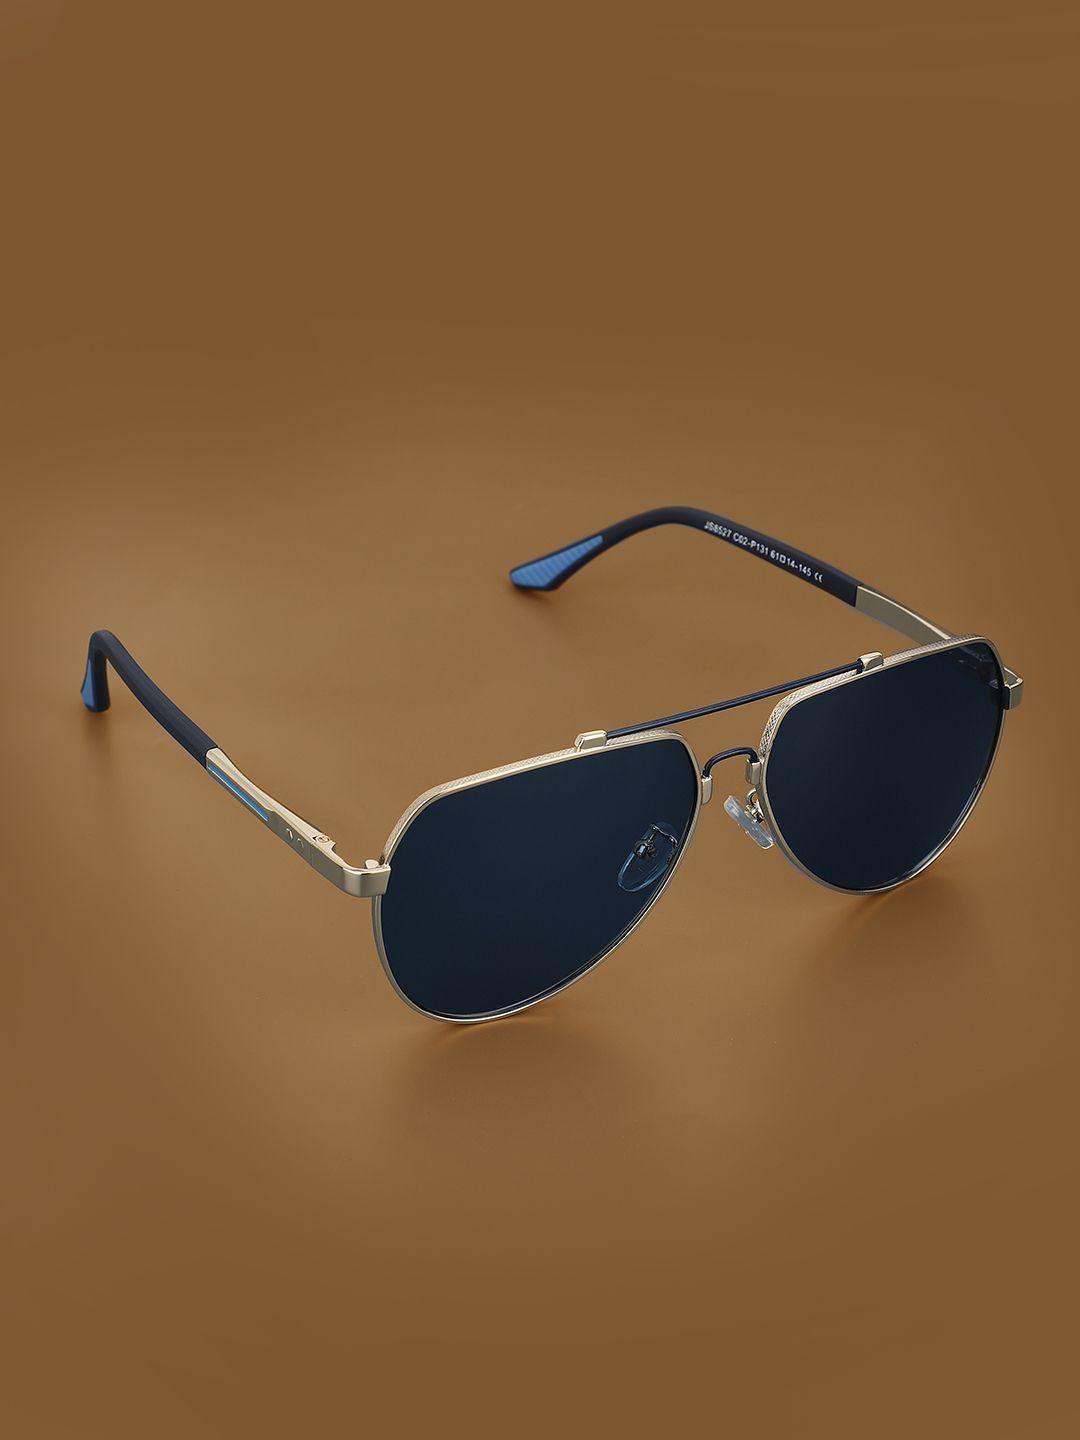 carlton london premium men aviator sunglasses with polarised uv protected lens clsm129